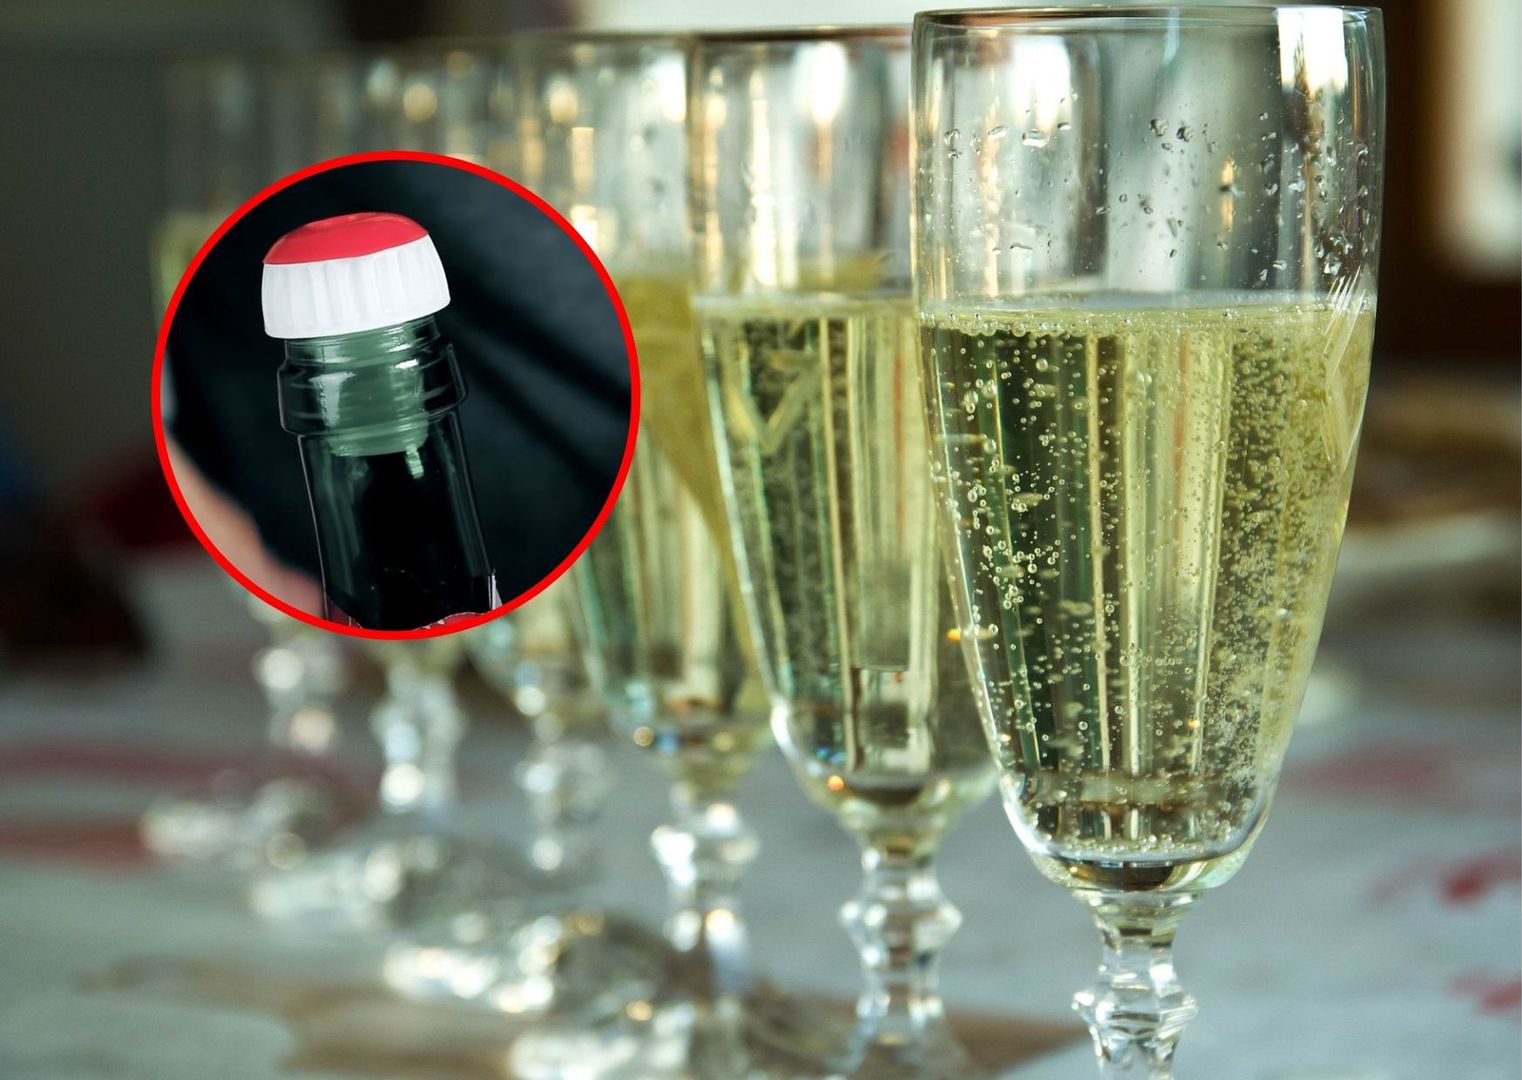 Do czego służy czerwona końcówka korka od szampana? To cię zaskoczy!